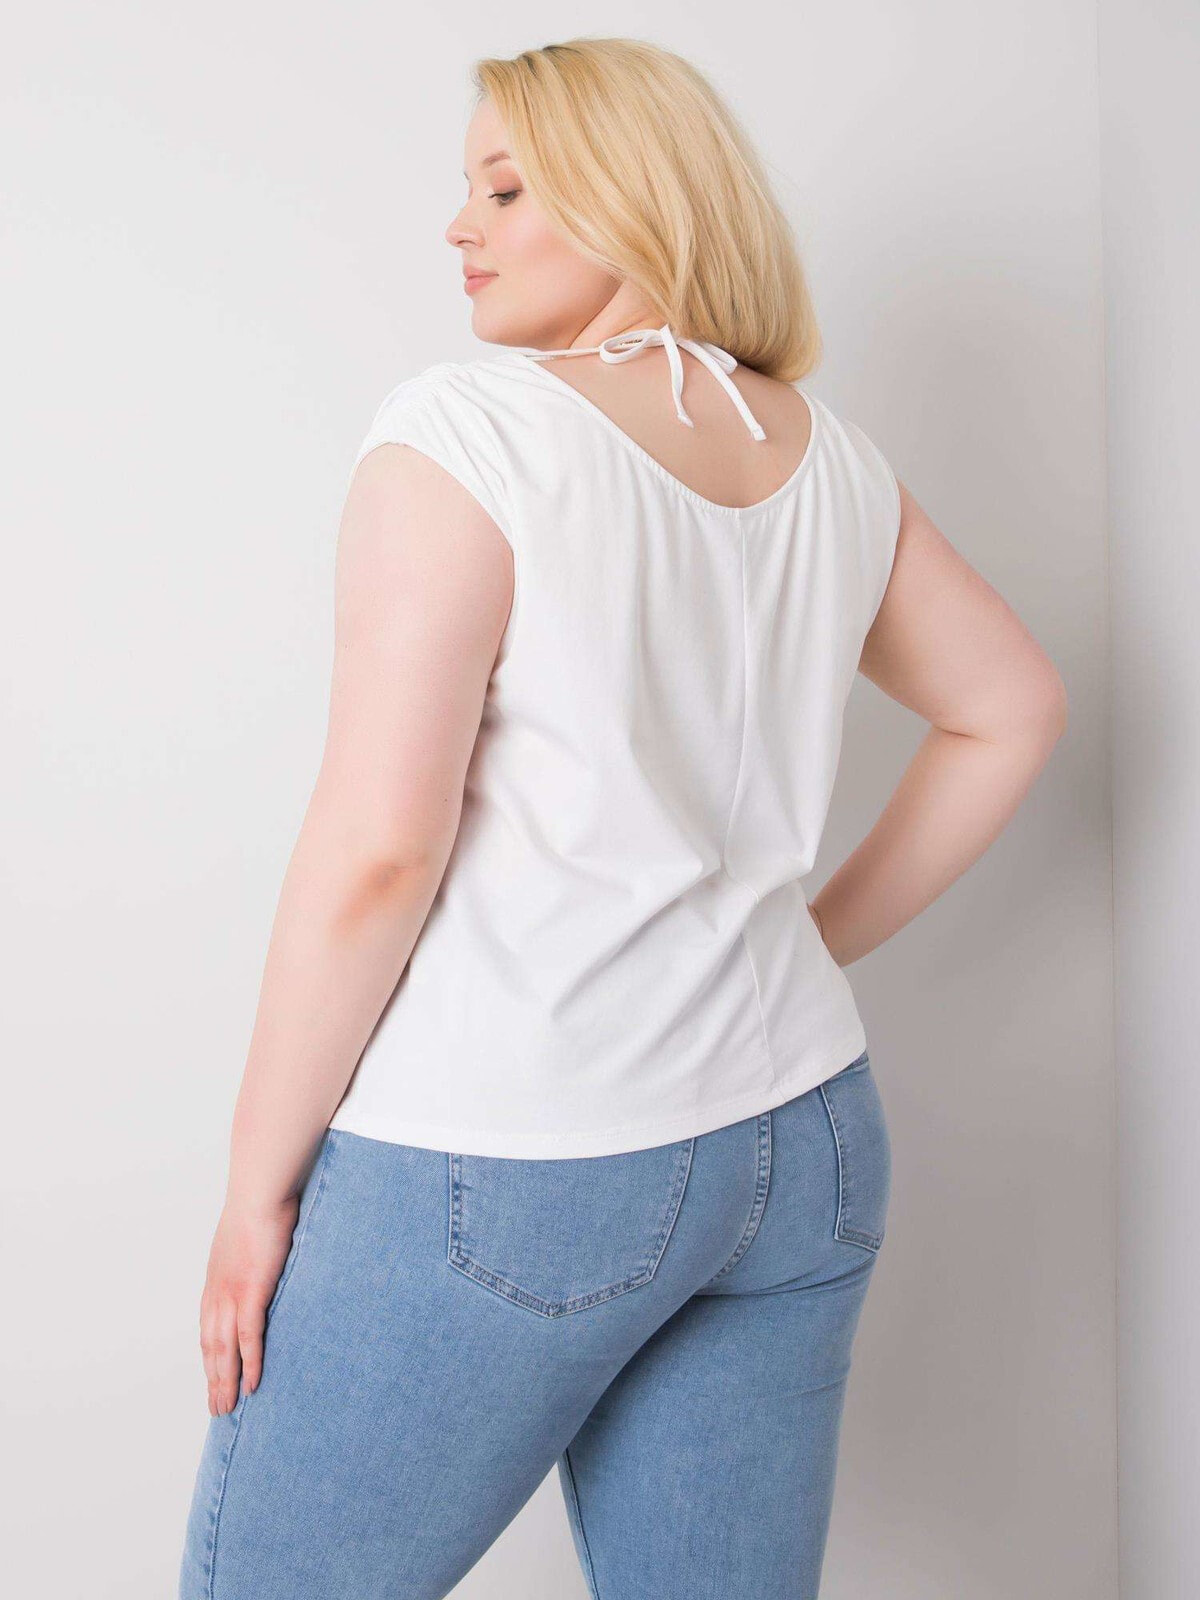 Женская блузка свободного кроя с коротким рукавом белая Factory Price